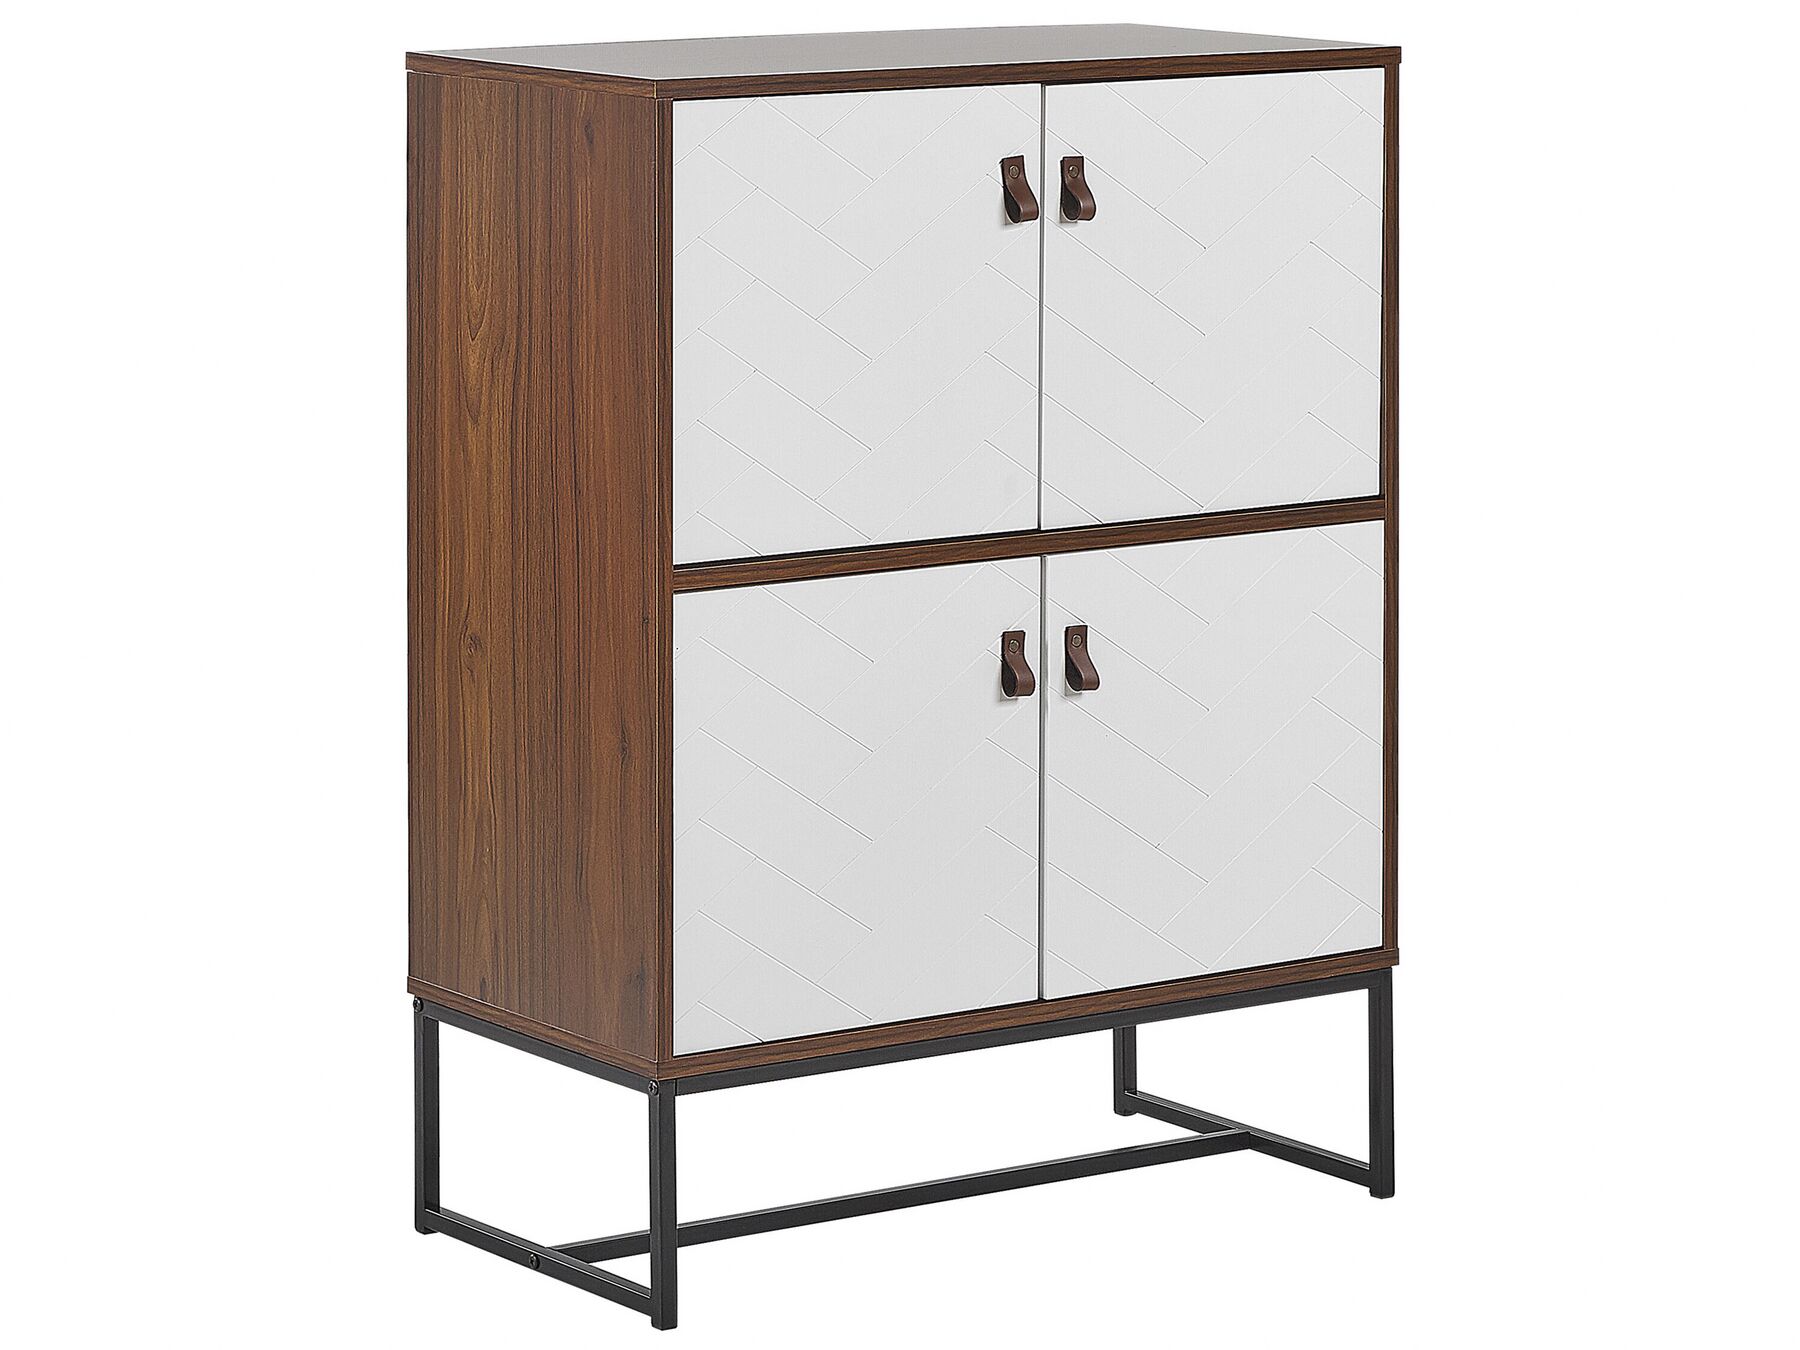 Modern Sideboard Storage Cabinet 4 Doors Metal Legs Dark Wood with White Nueva